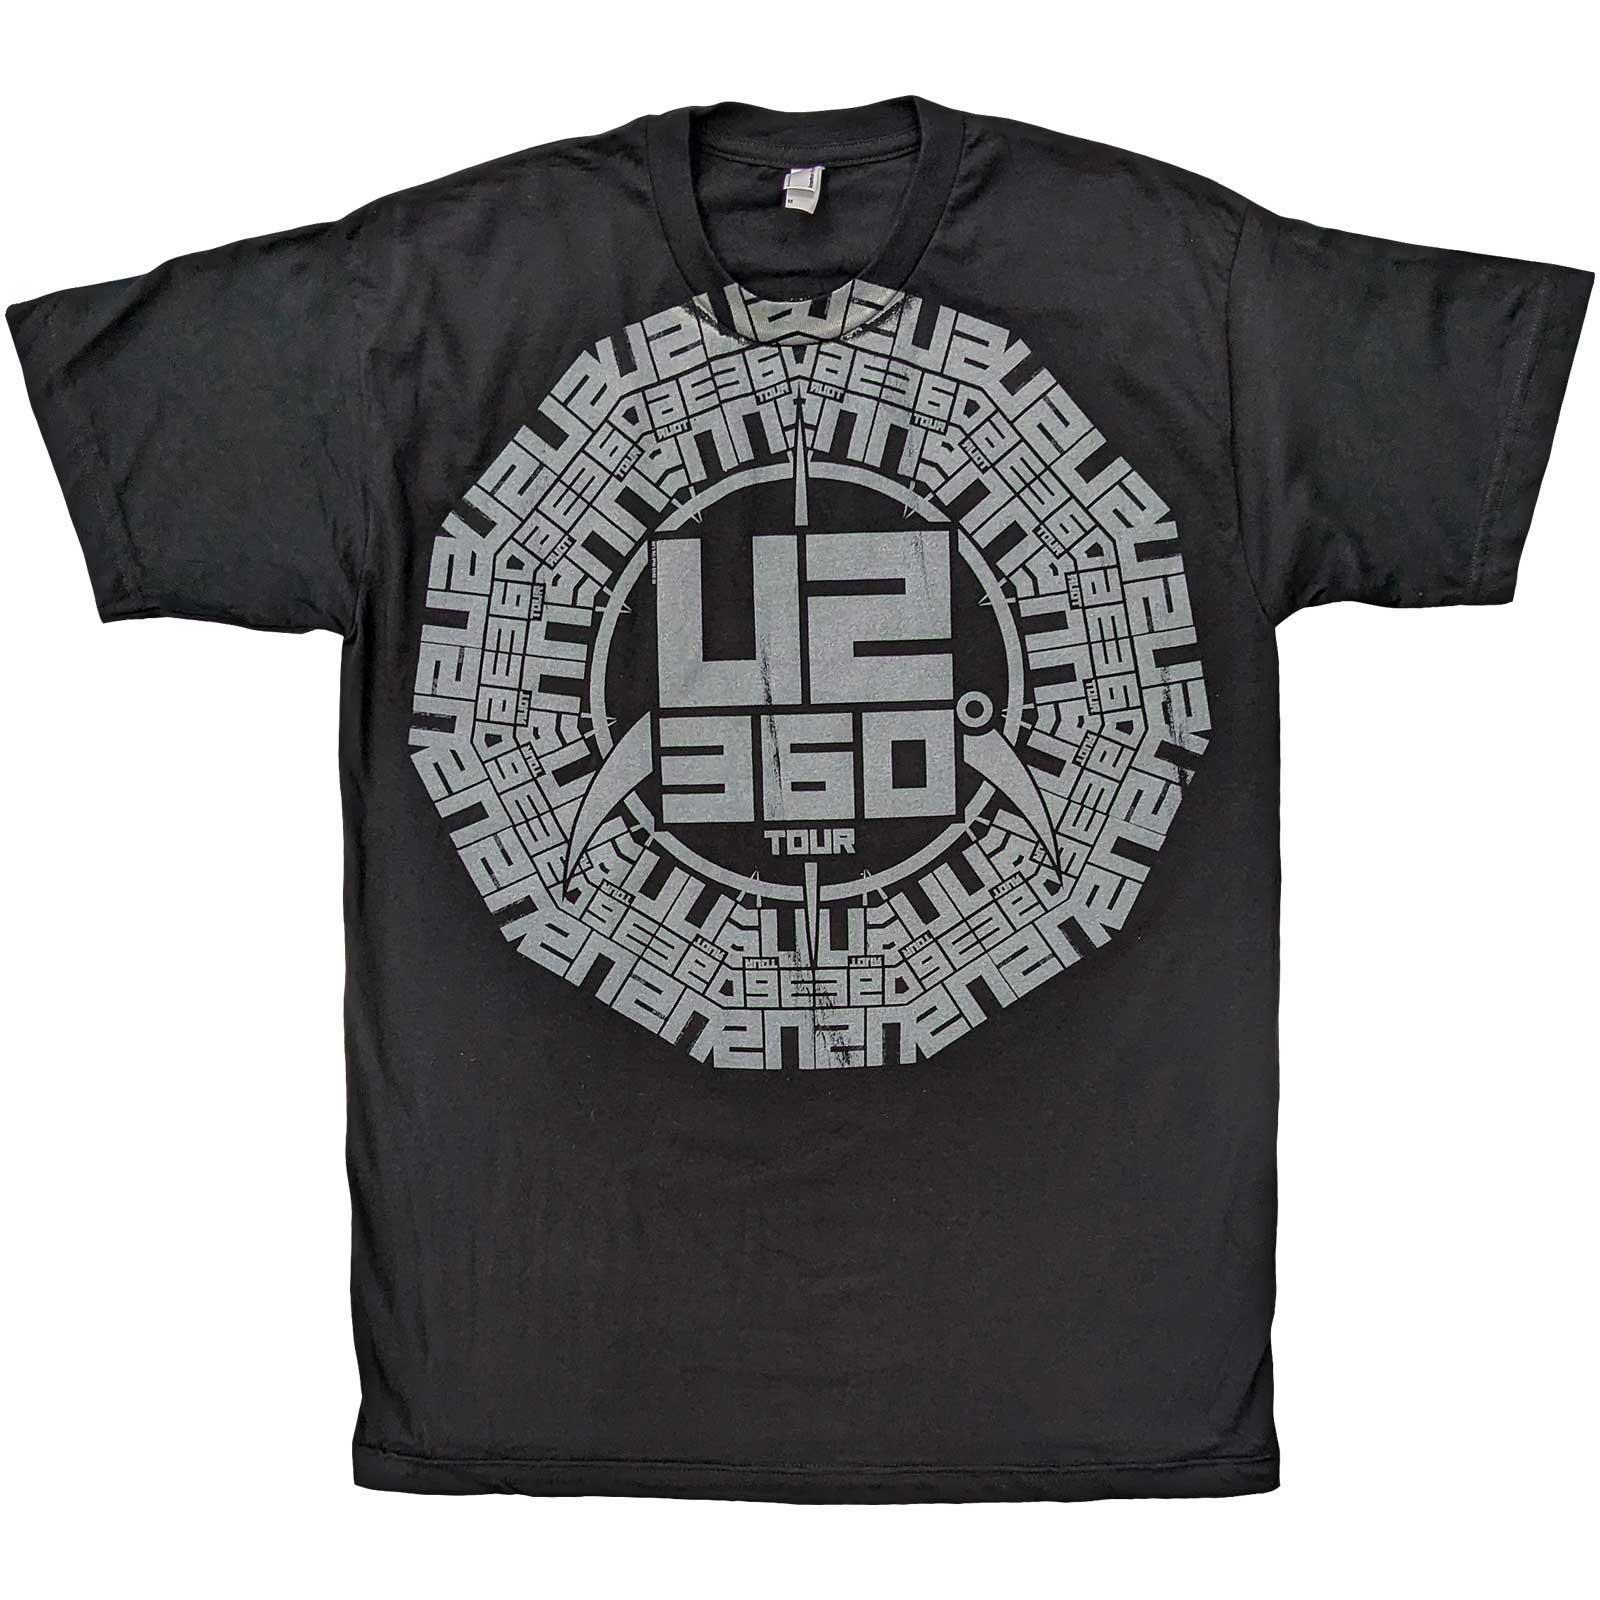 (ユートゥー) U2 オフィシャル商品 ユニセックス 360 Degree Tour ロゴ Tシャツ コットン 半袖 トップス 【海外通販】